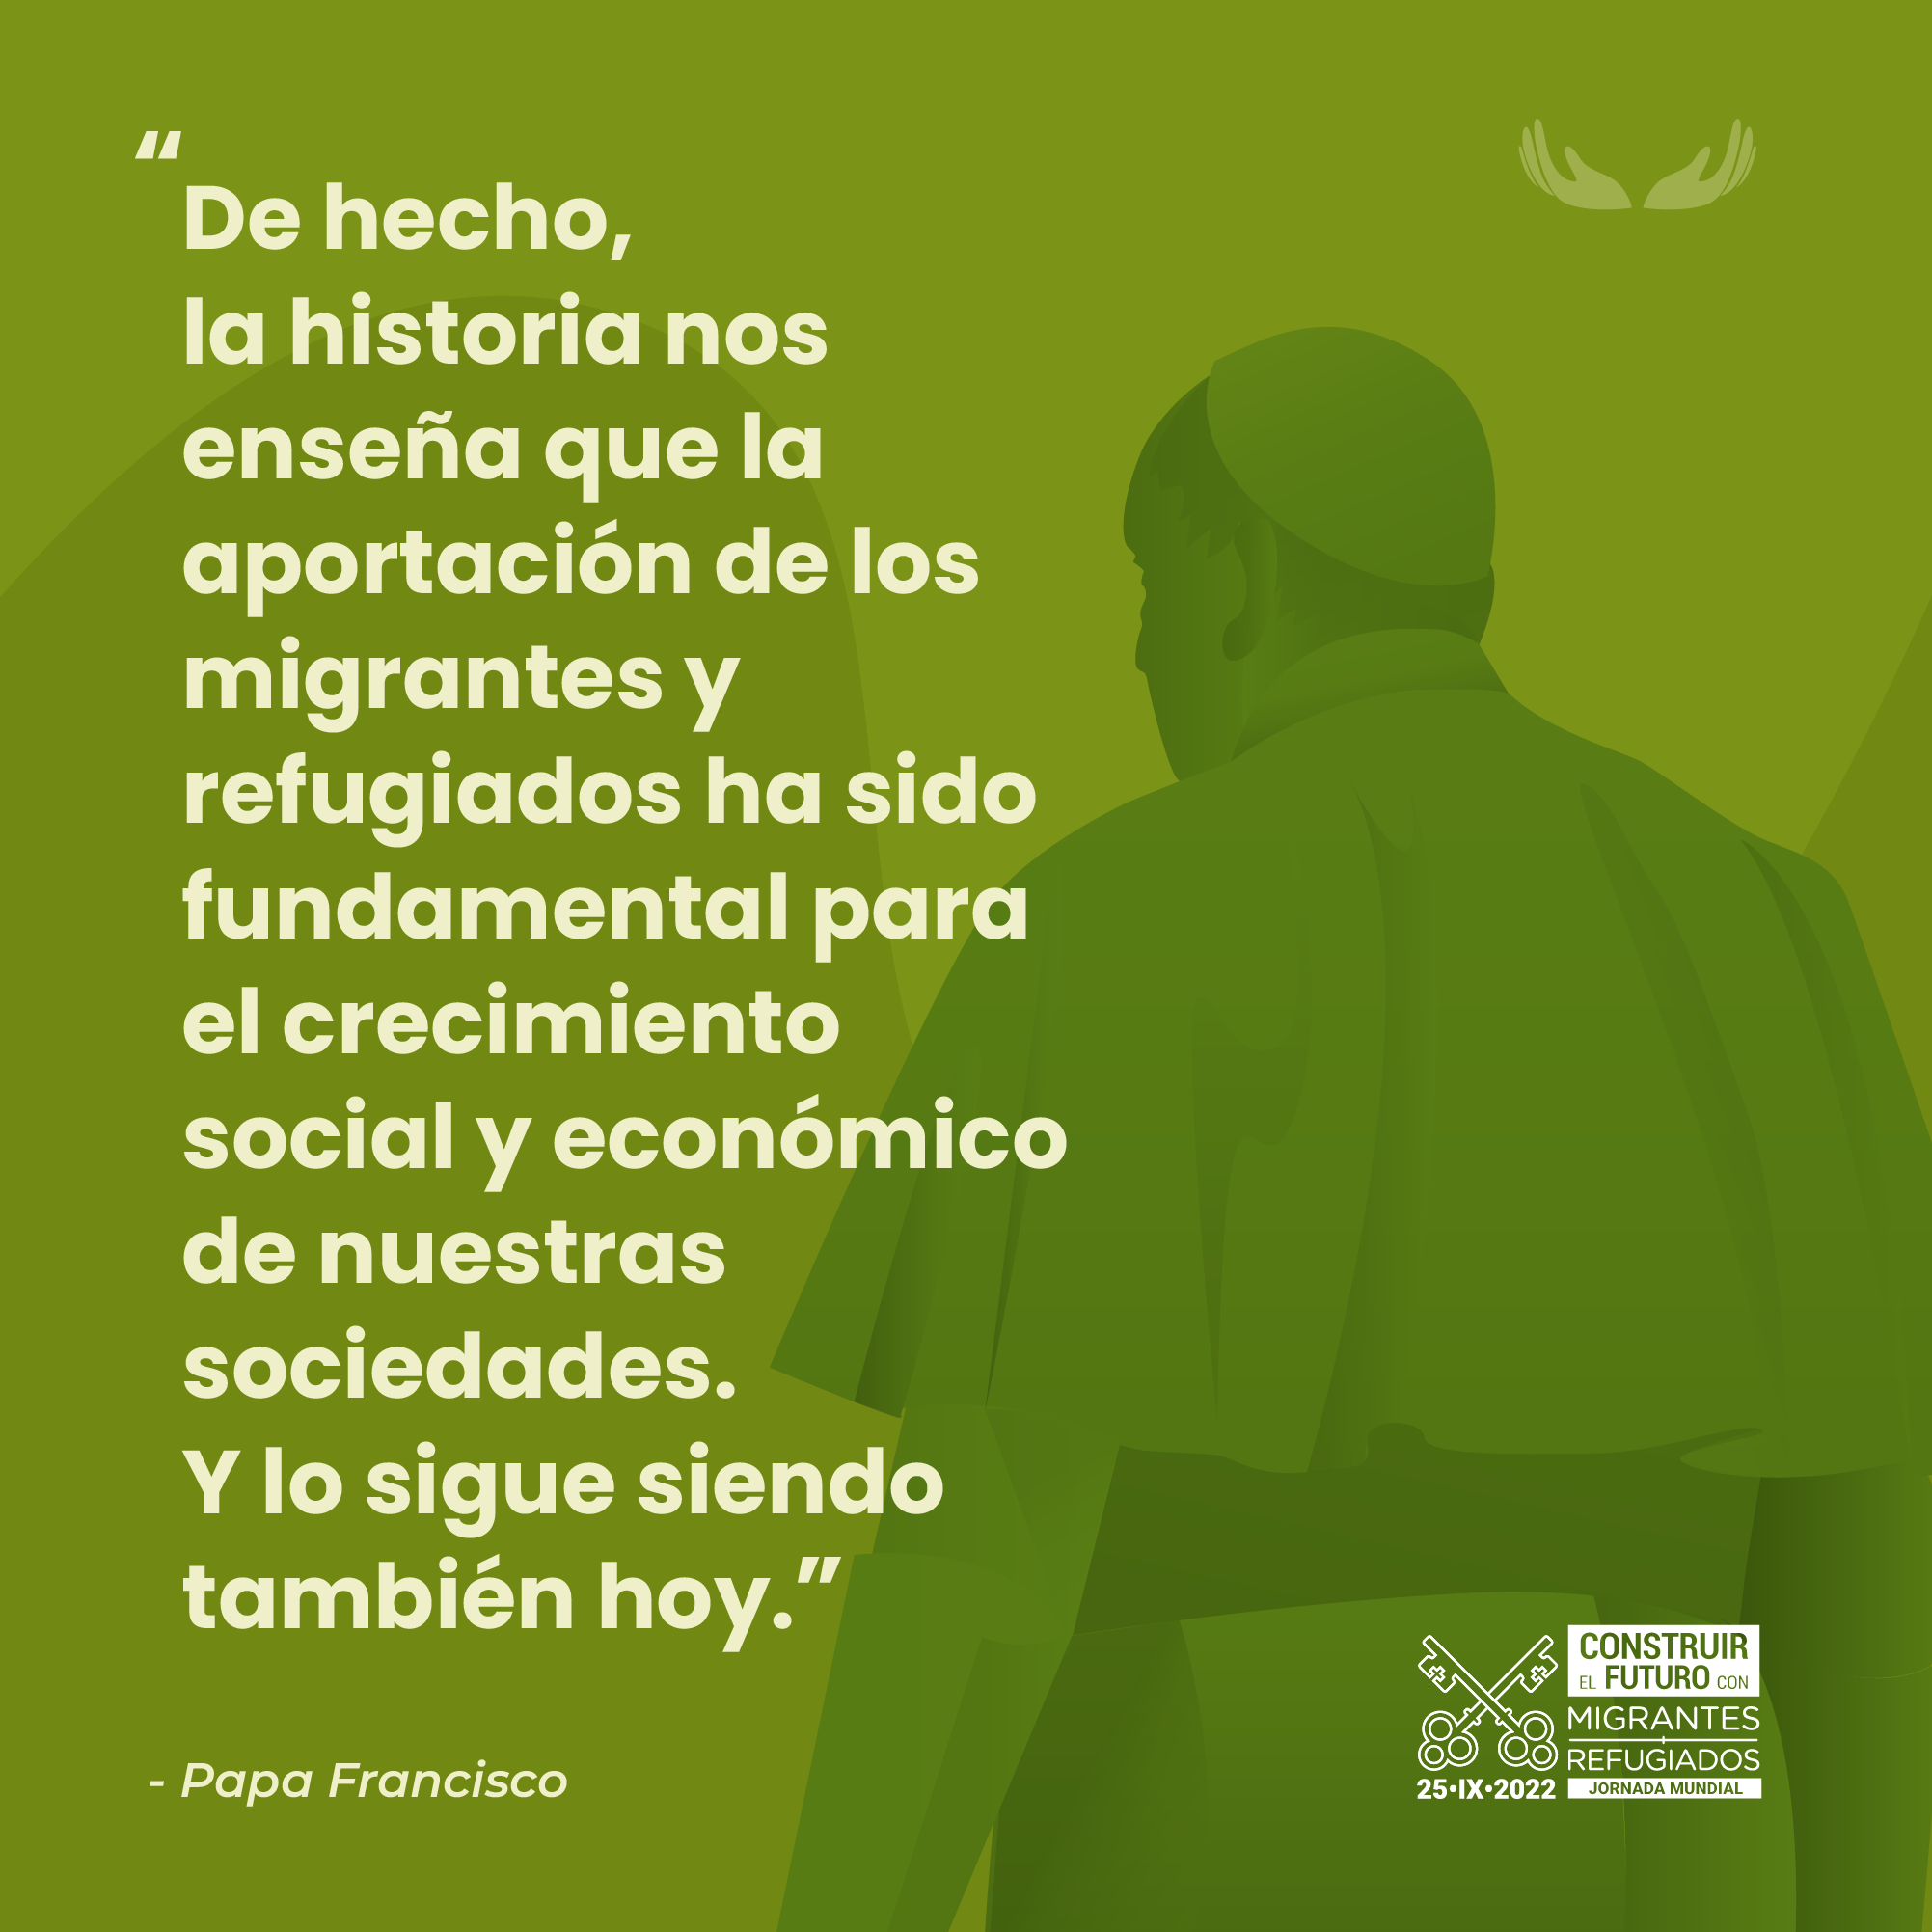 Jornada Mundial del Migrante y el Regugiado. Materiales tema 3: "Crecer juntos como sociedad". Papa Francisco.